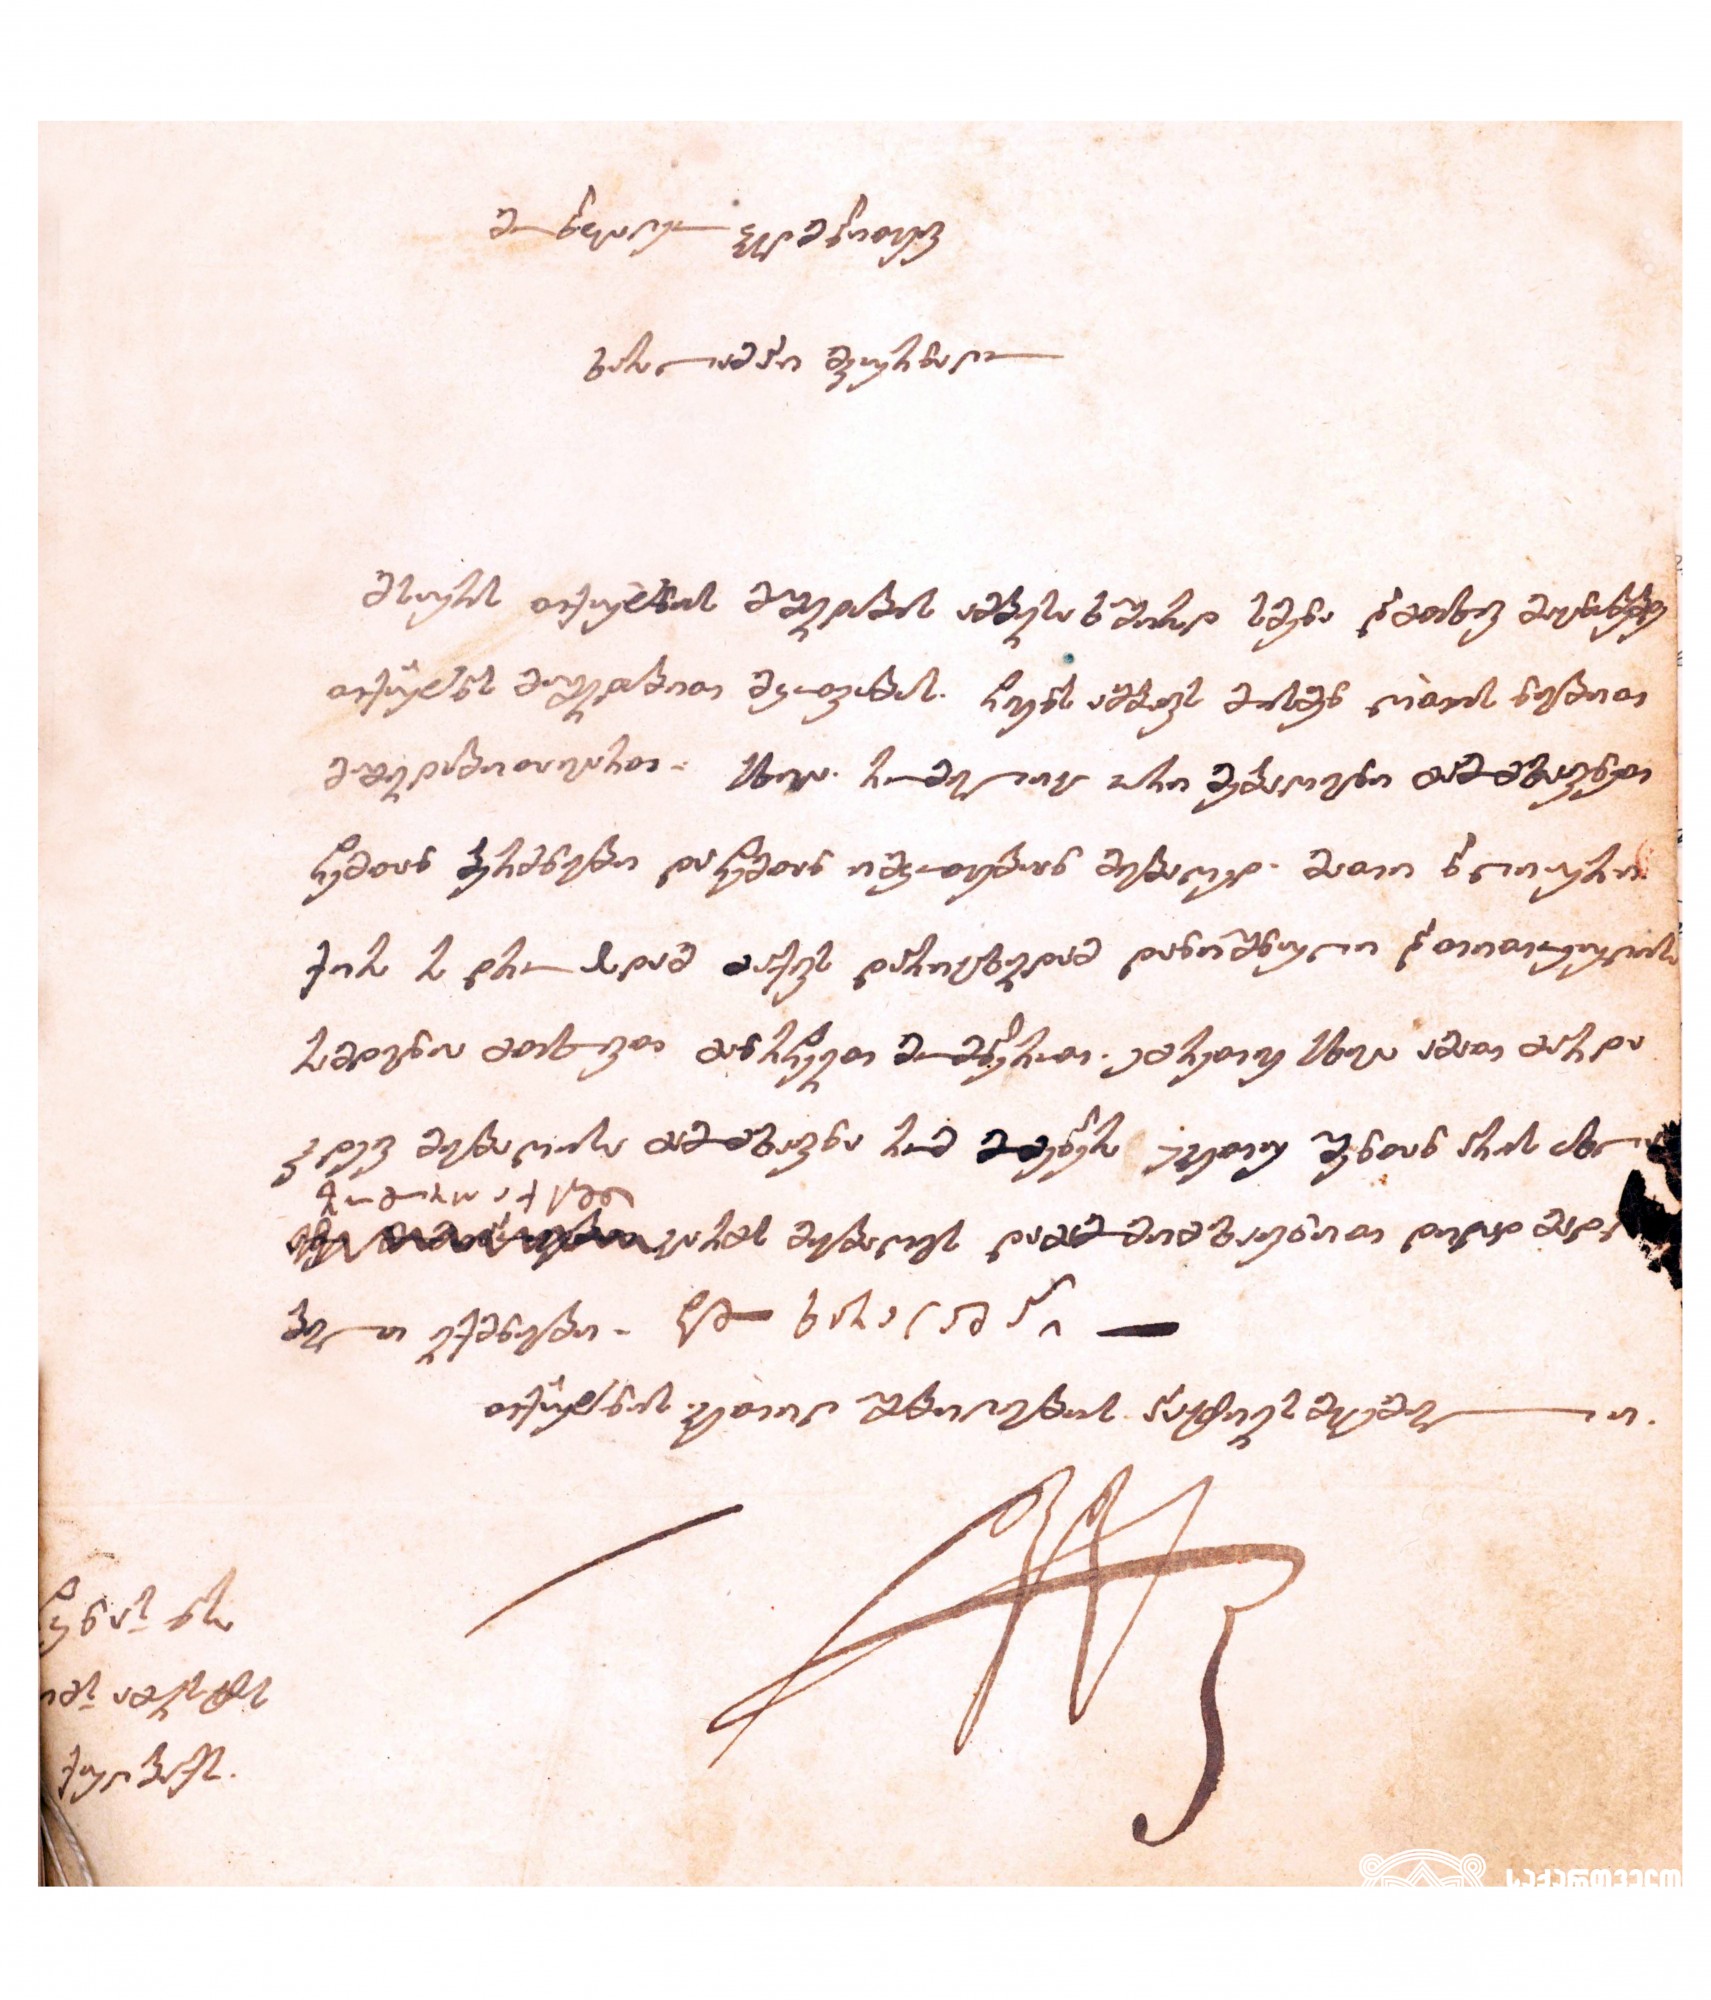 სამეგრელოს მთავრის - ლევან დადიანის მადლობის წერილი ბერძენ მკურნალს. <br>
1851 წელი. <br>
Letter of gratitude to the Prince of Samegrelo Levan Dadiani to a Greek healer. <br>
1851.